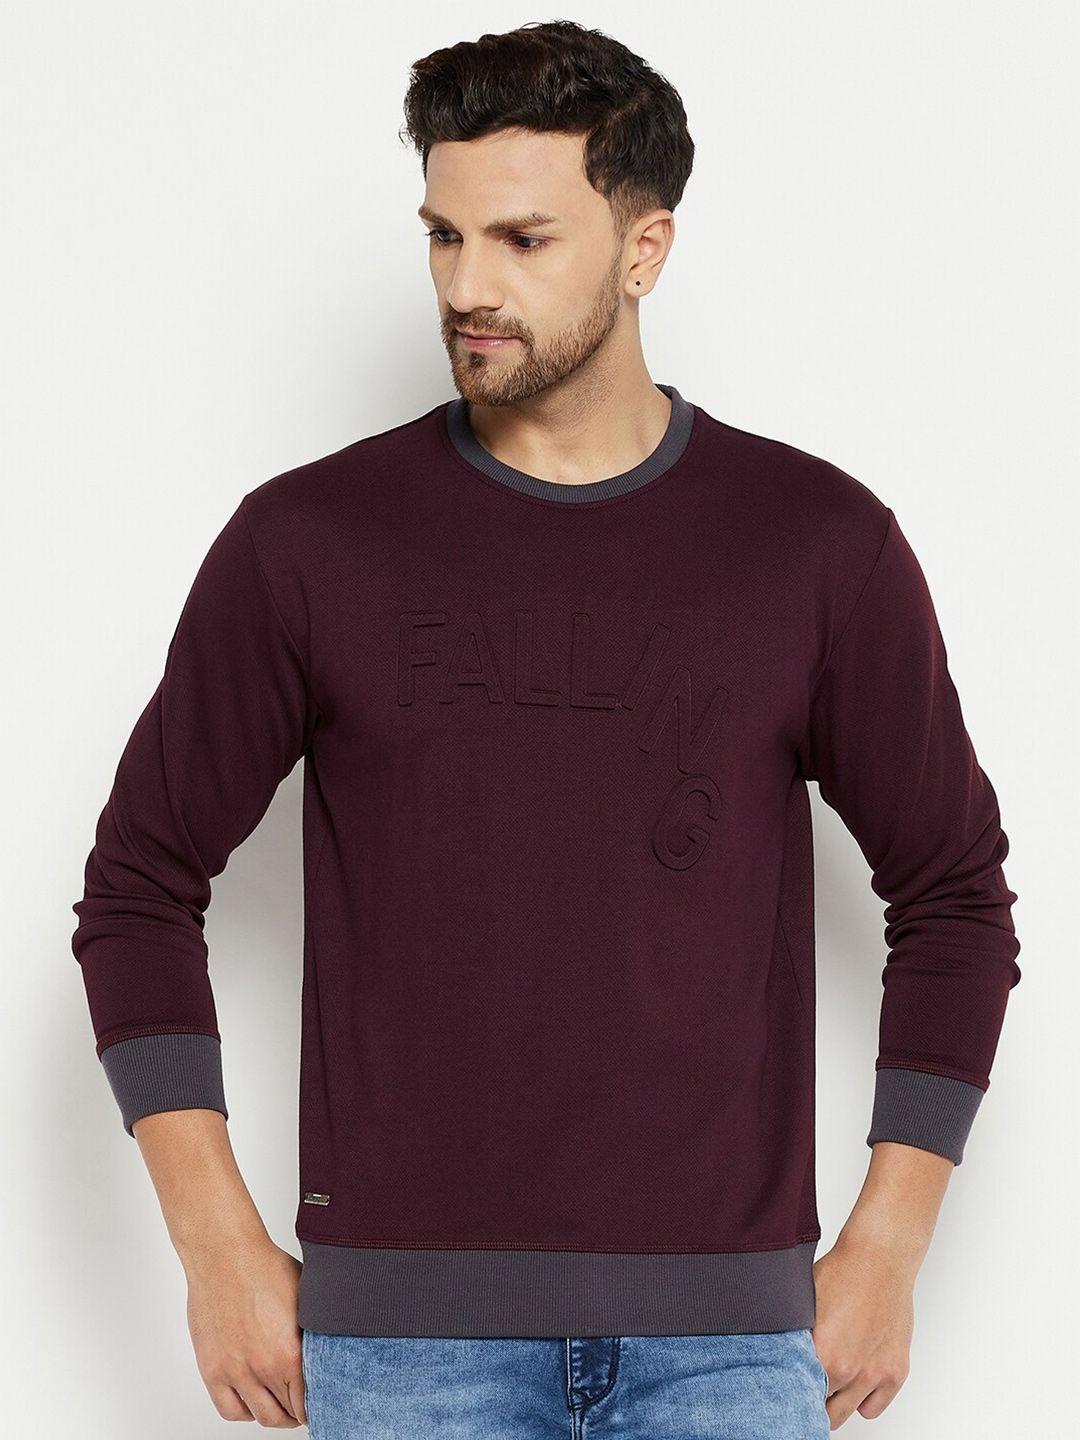 duke-men-purple-fleece-sweatshirt